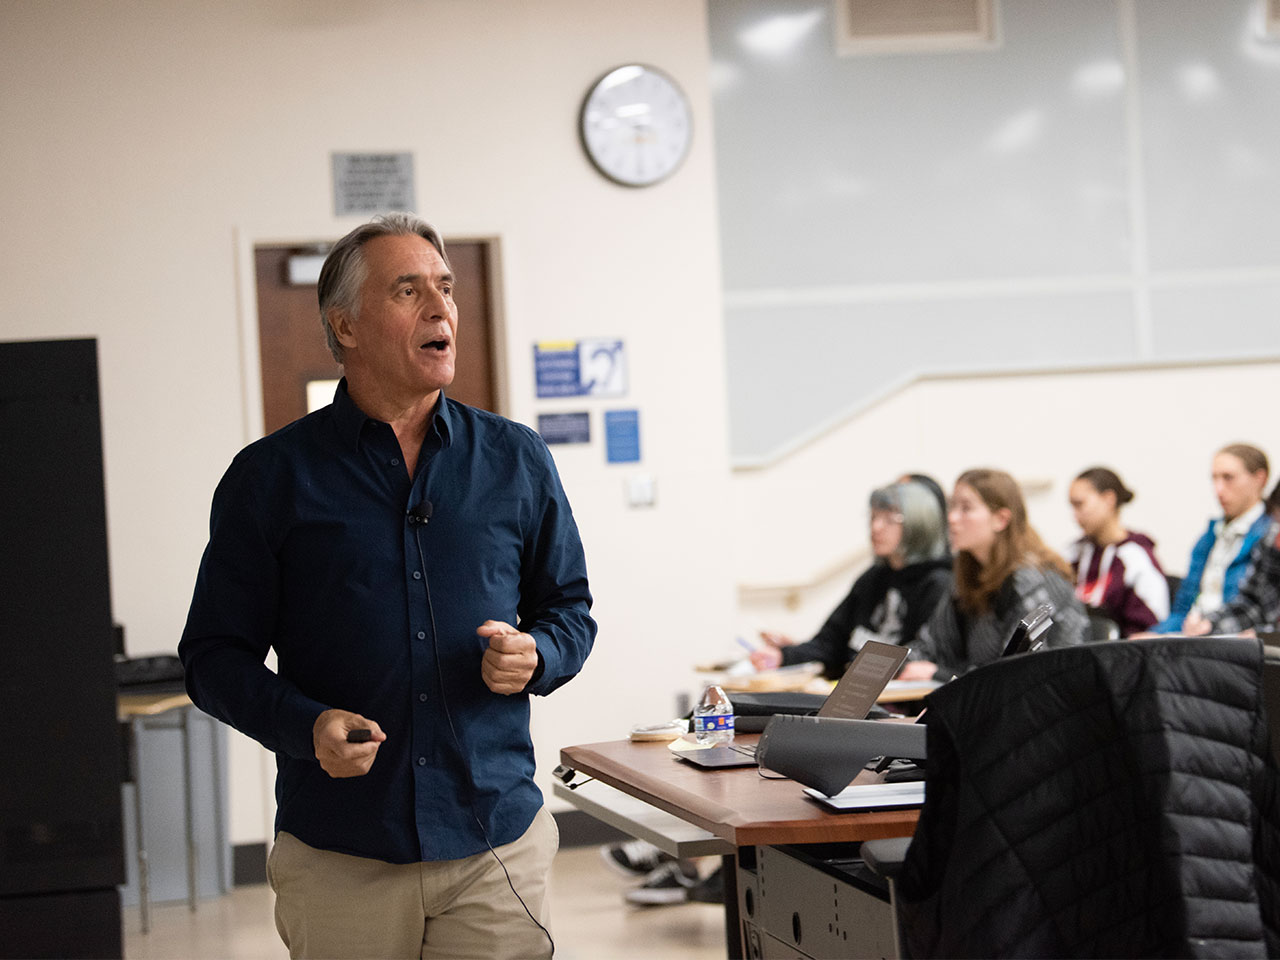 A UC Davis professor in a dark blue button-up shirt teaches a class.